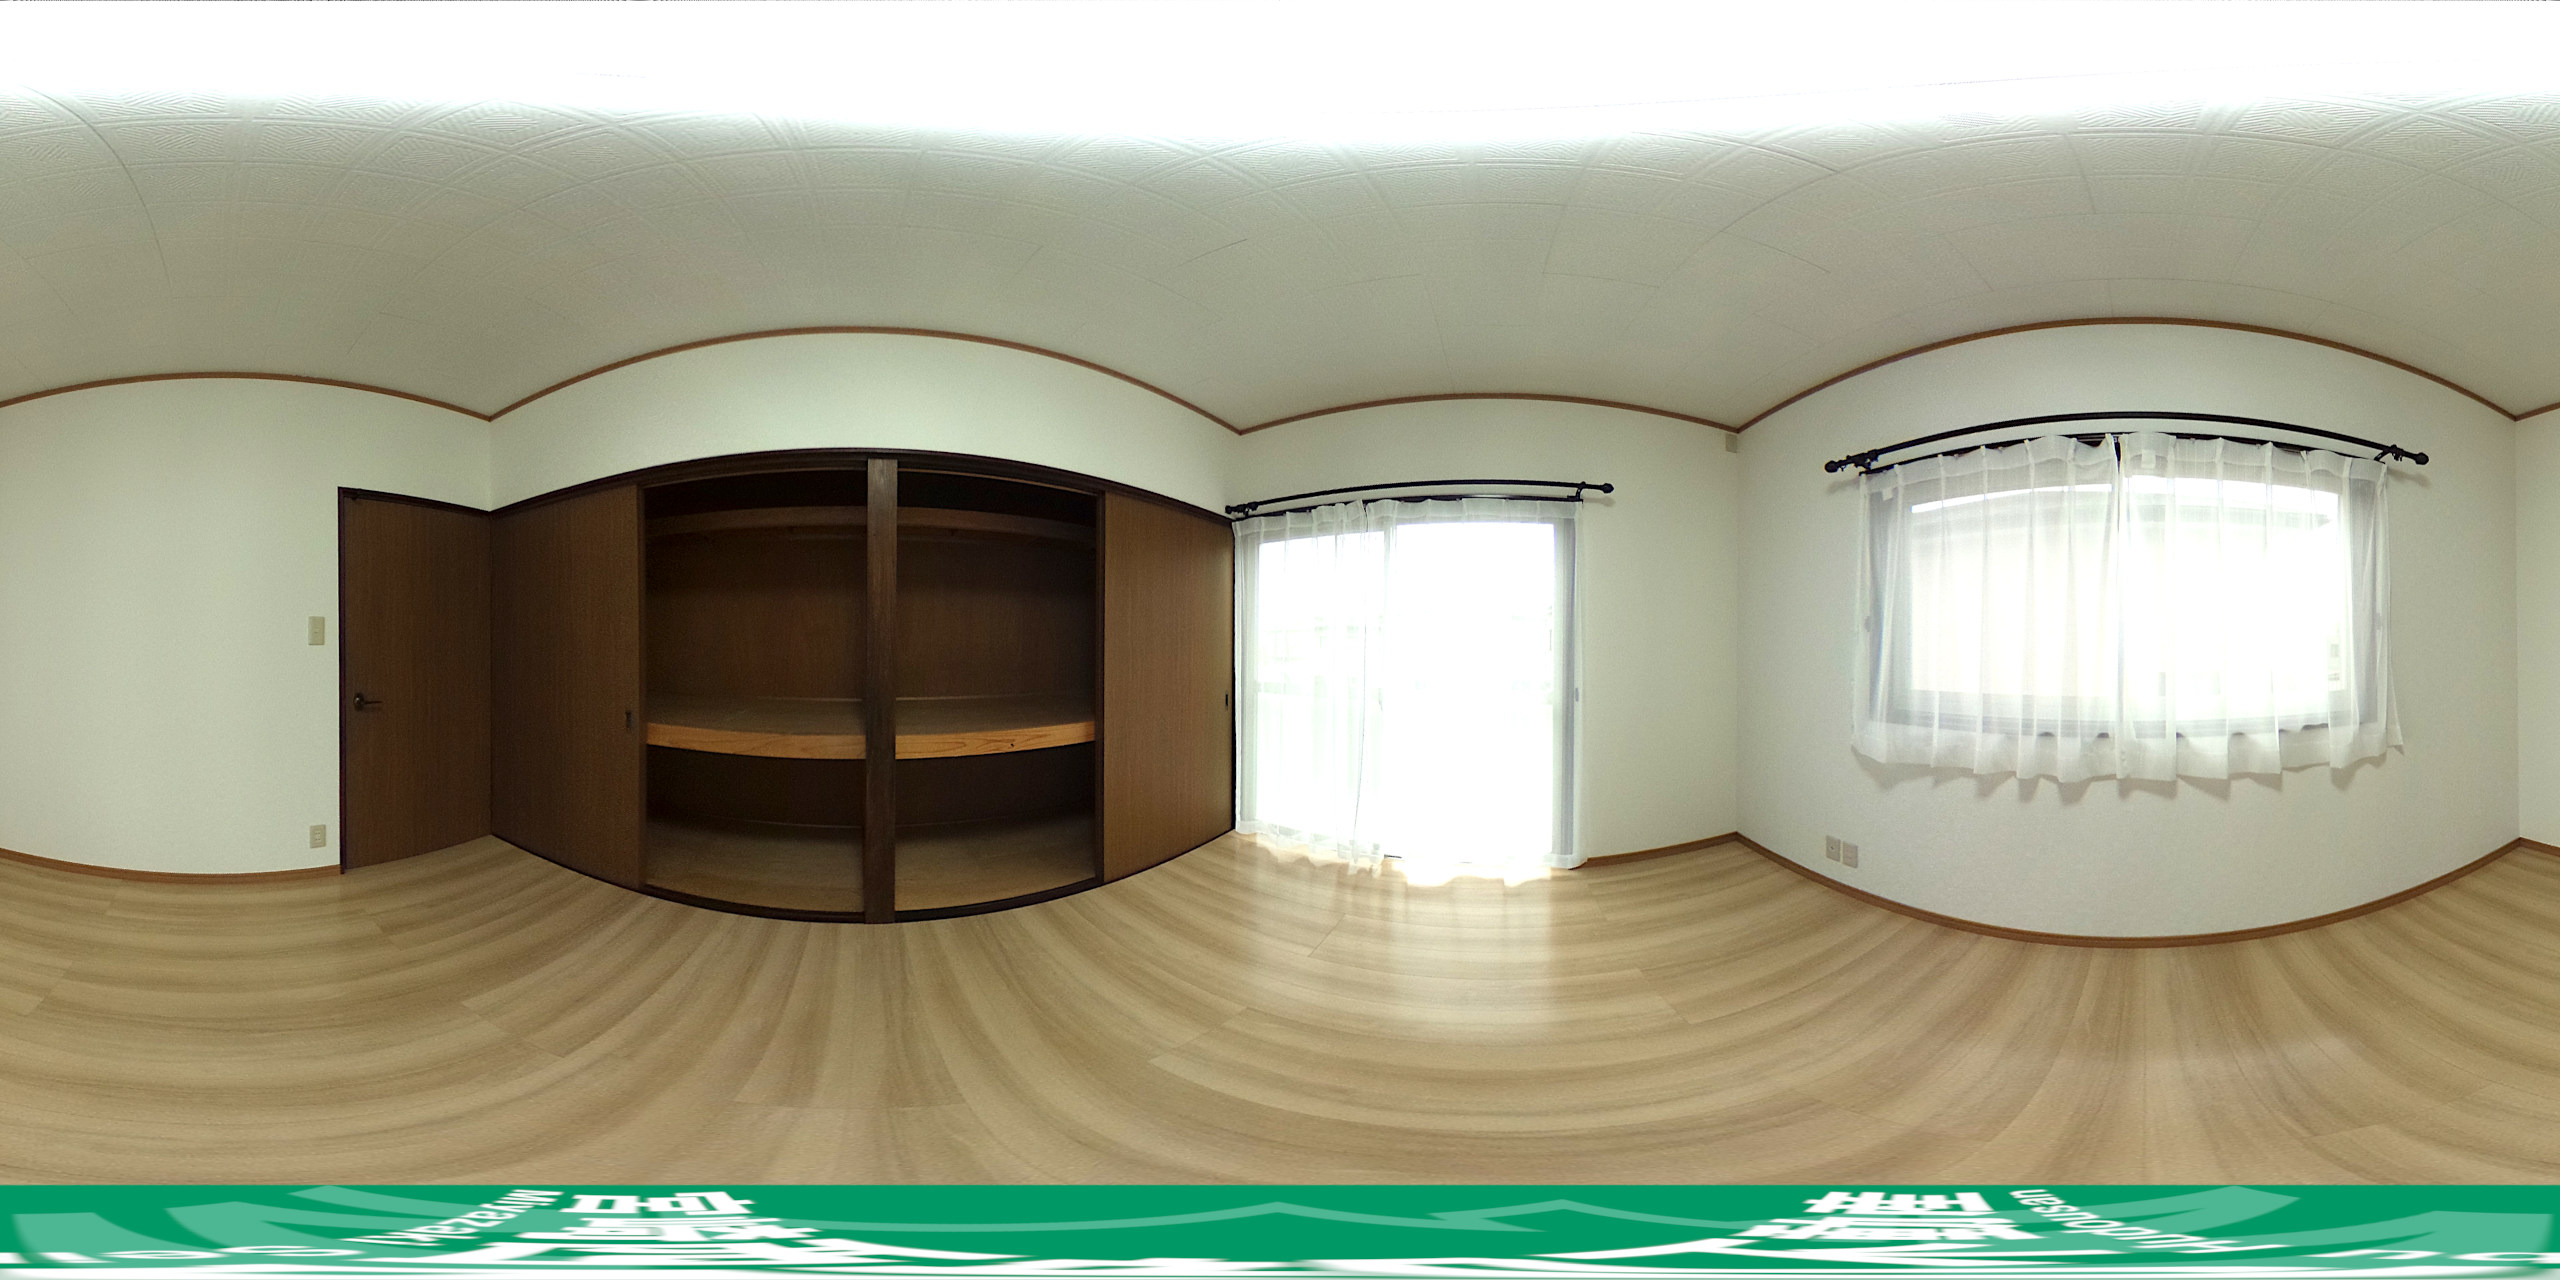 【2階寝室】360度パノラマビュー。マウスやタッチ操作で全方位を自由に見渡せます。